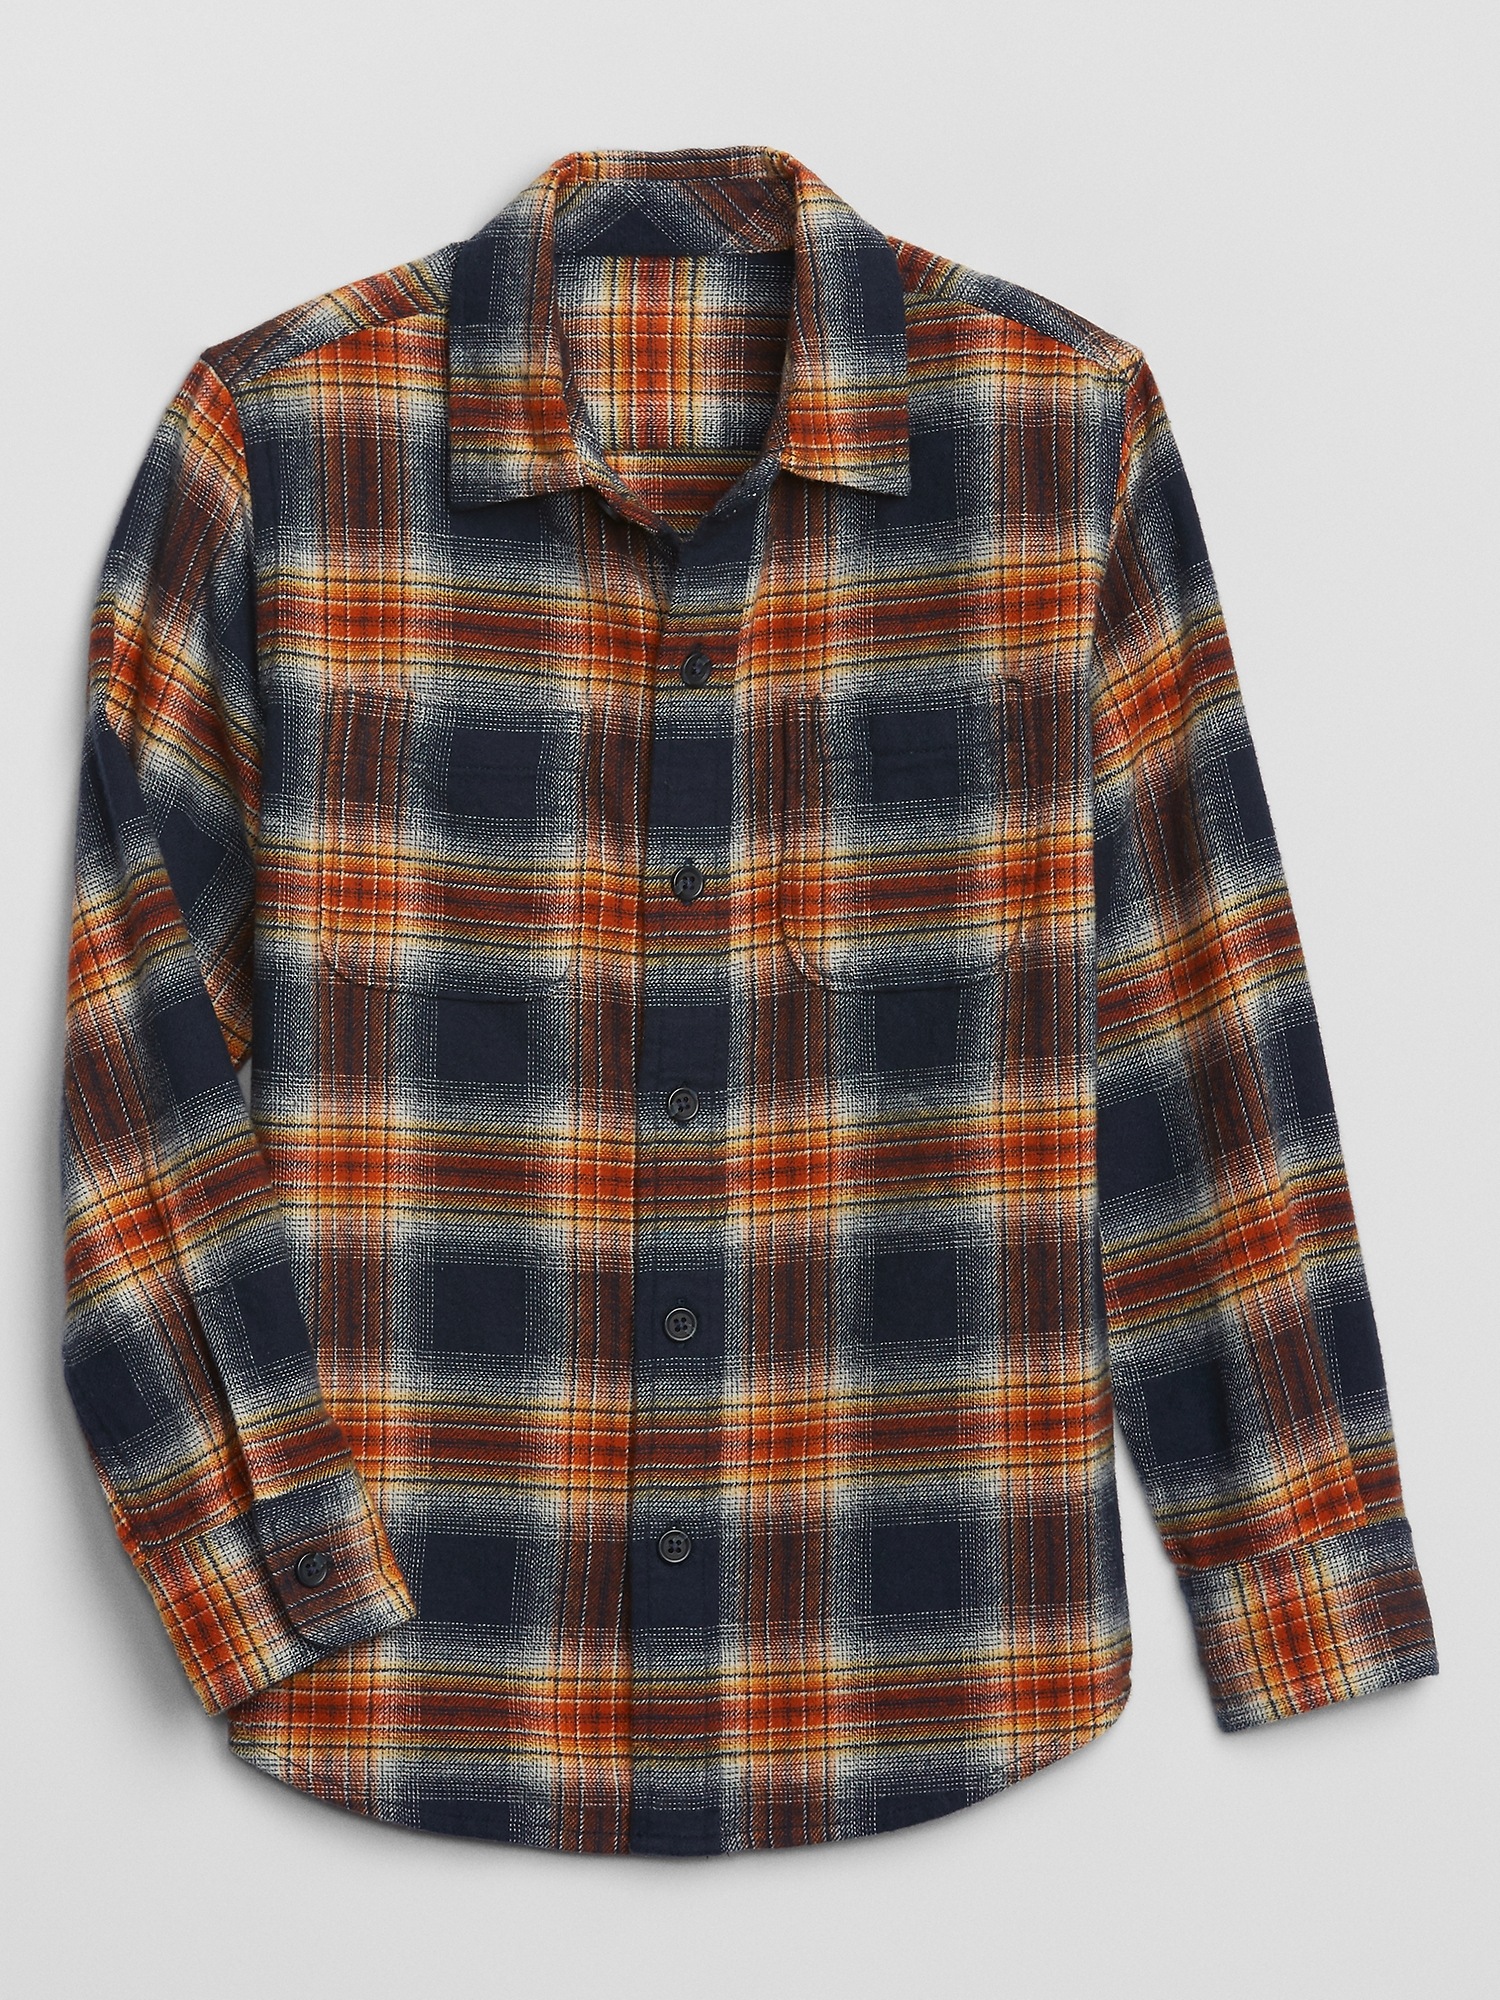 Kids Flannel Shirt | Gap Factory